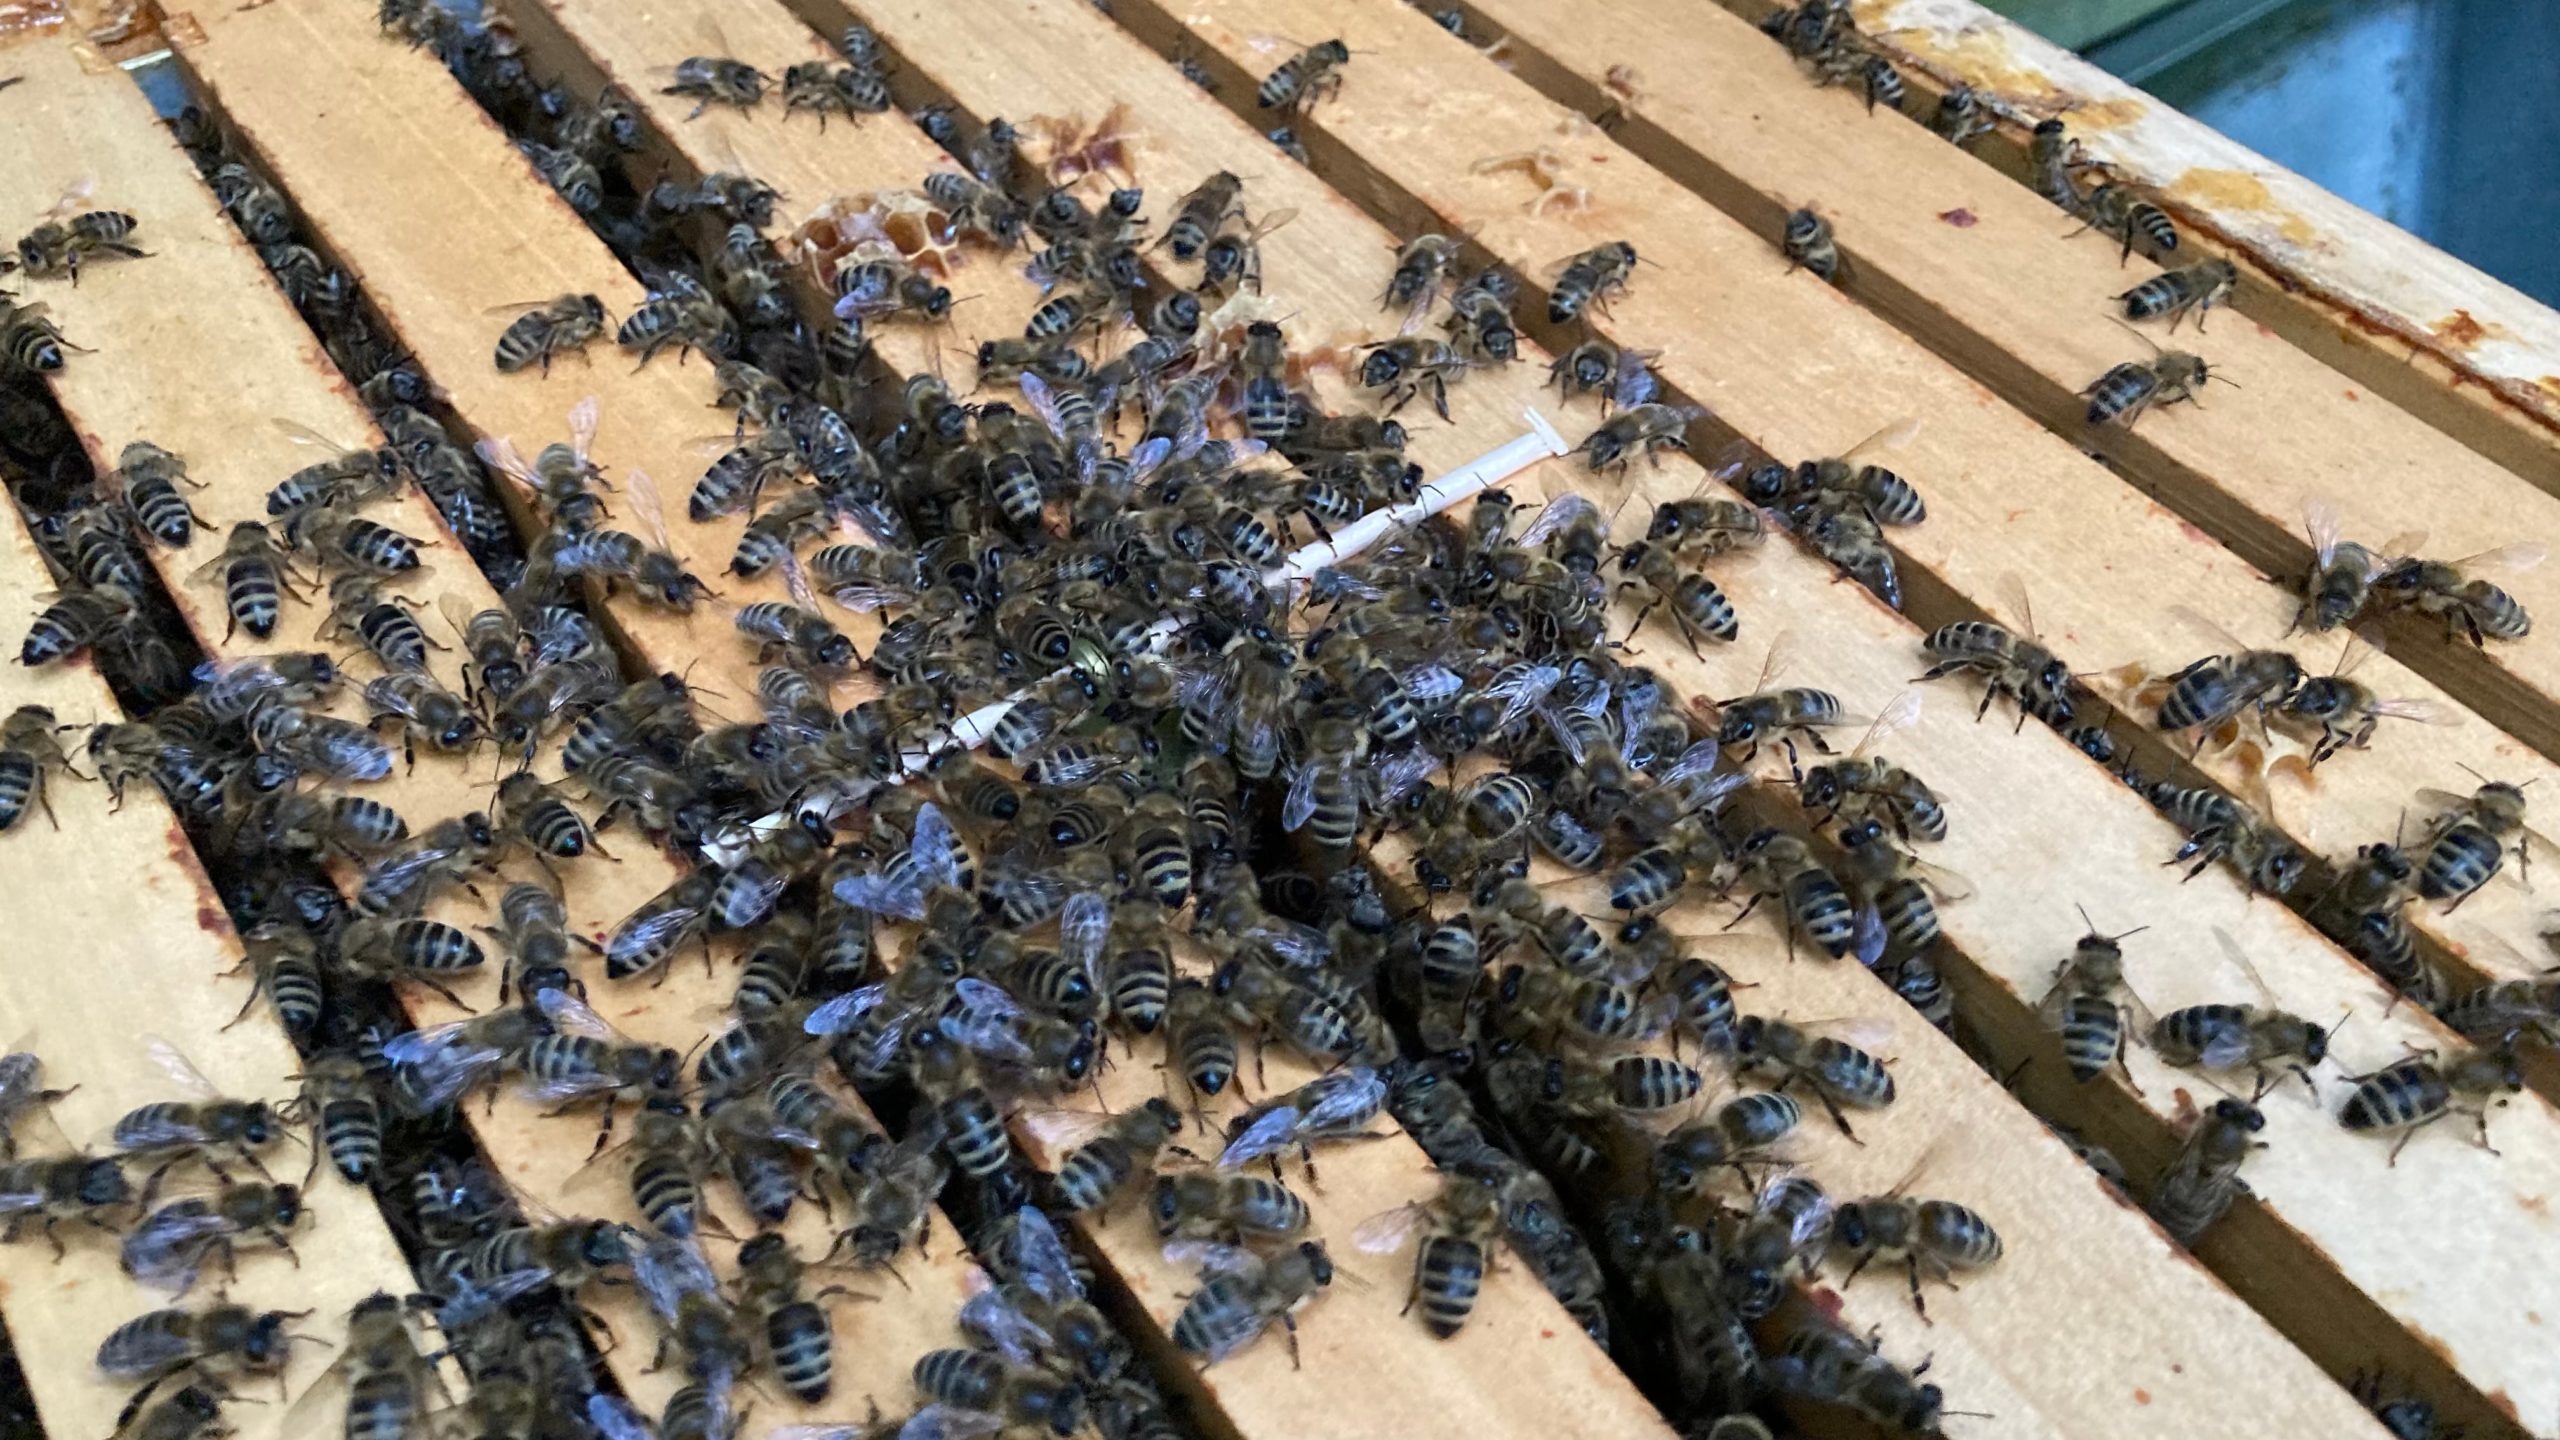 Die neue Weisel wird sofort beschnuppter - Freund oder Feind? Die Bienen müssen sich erstmal aneinander gewöhnen. 